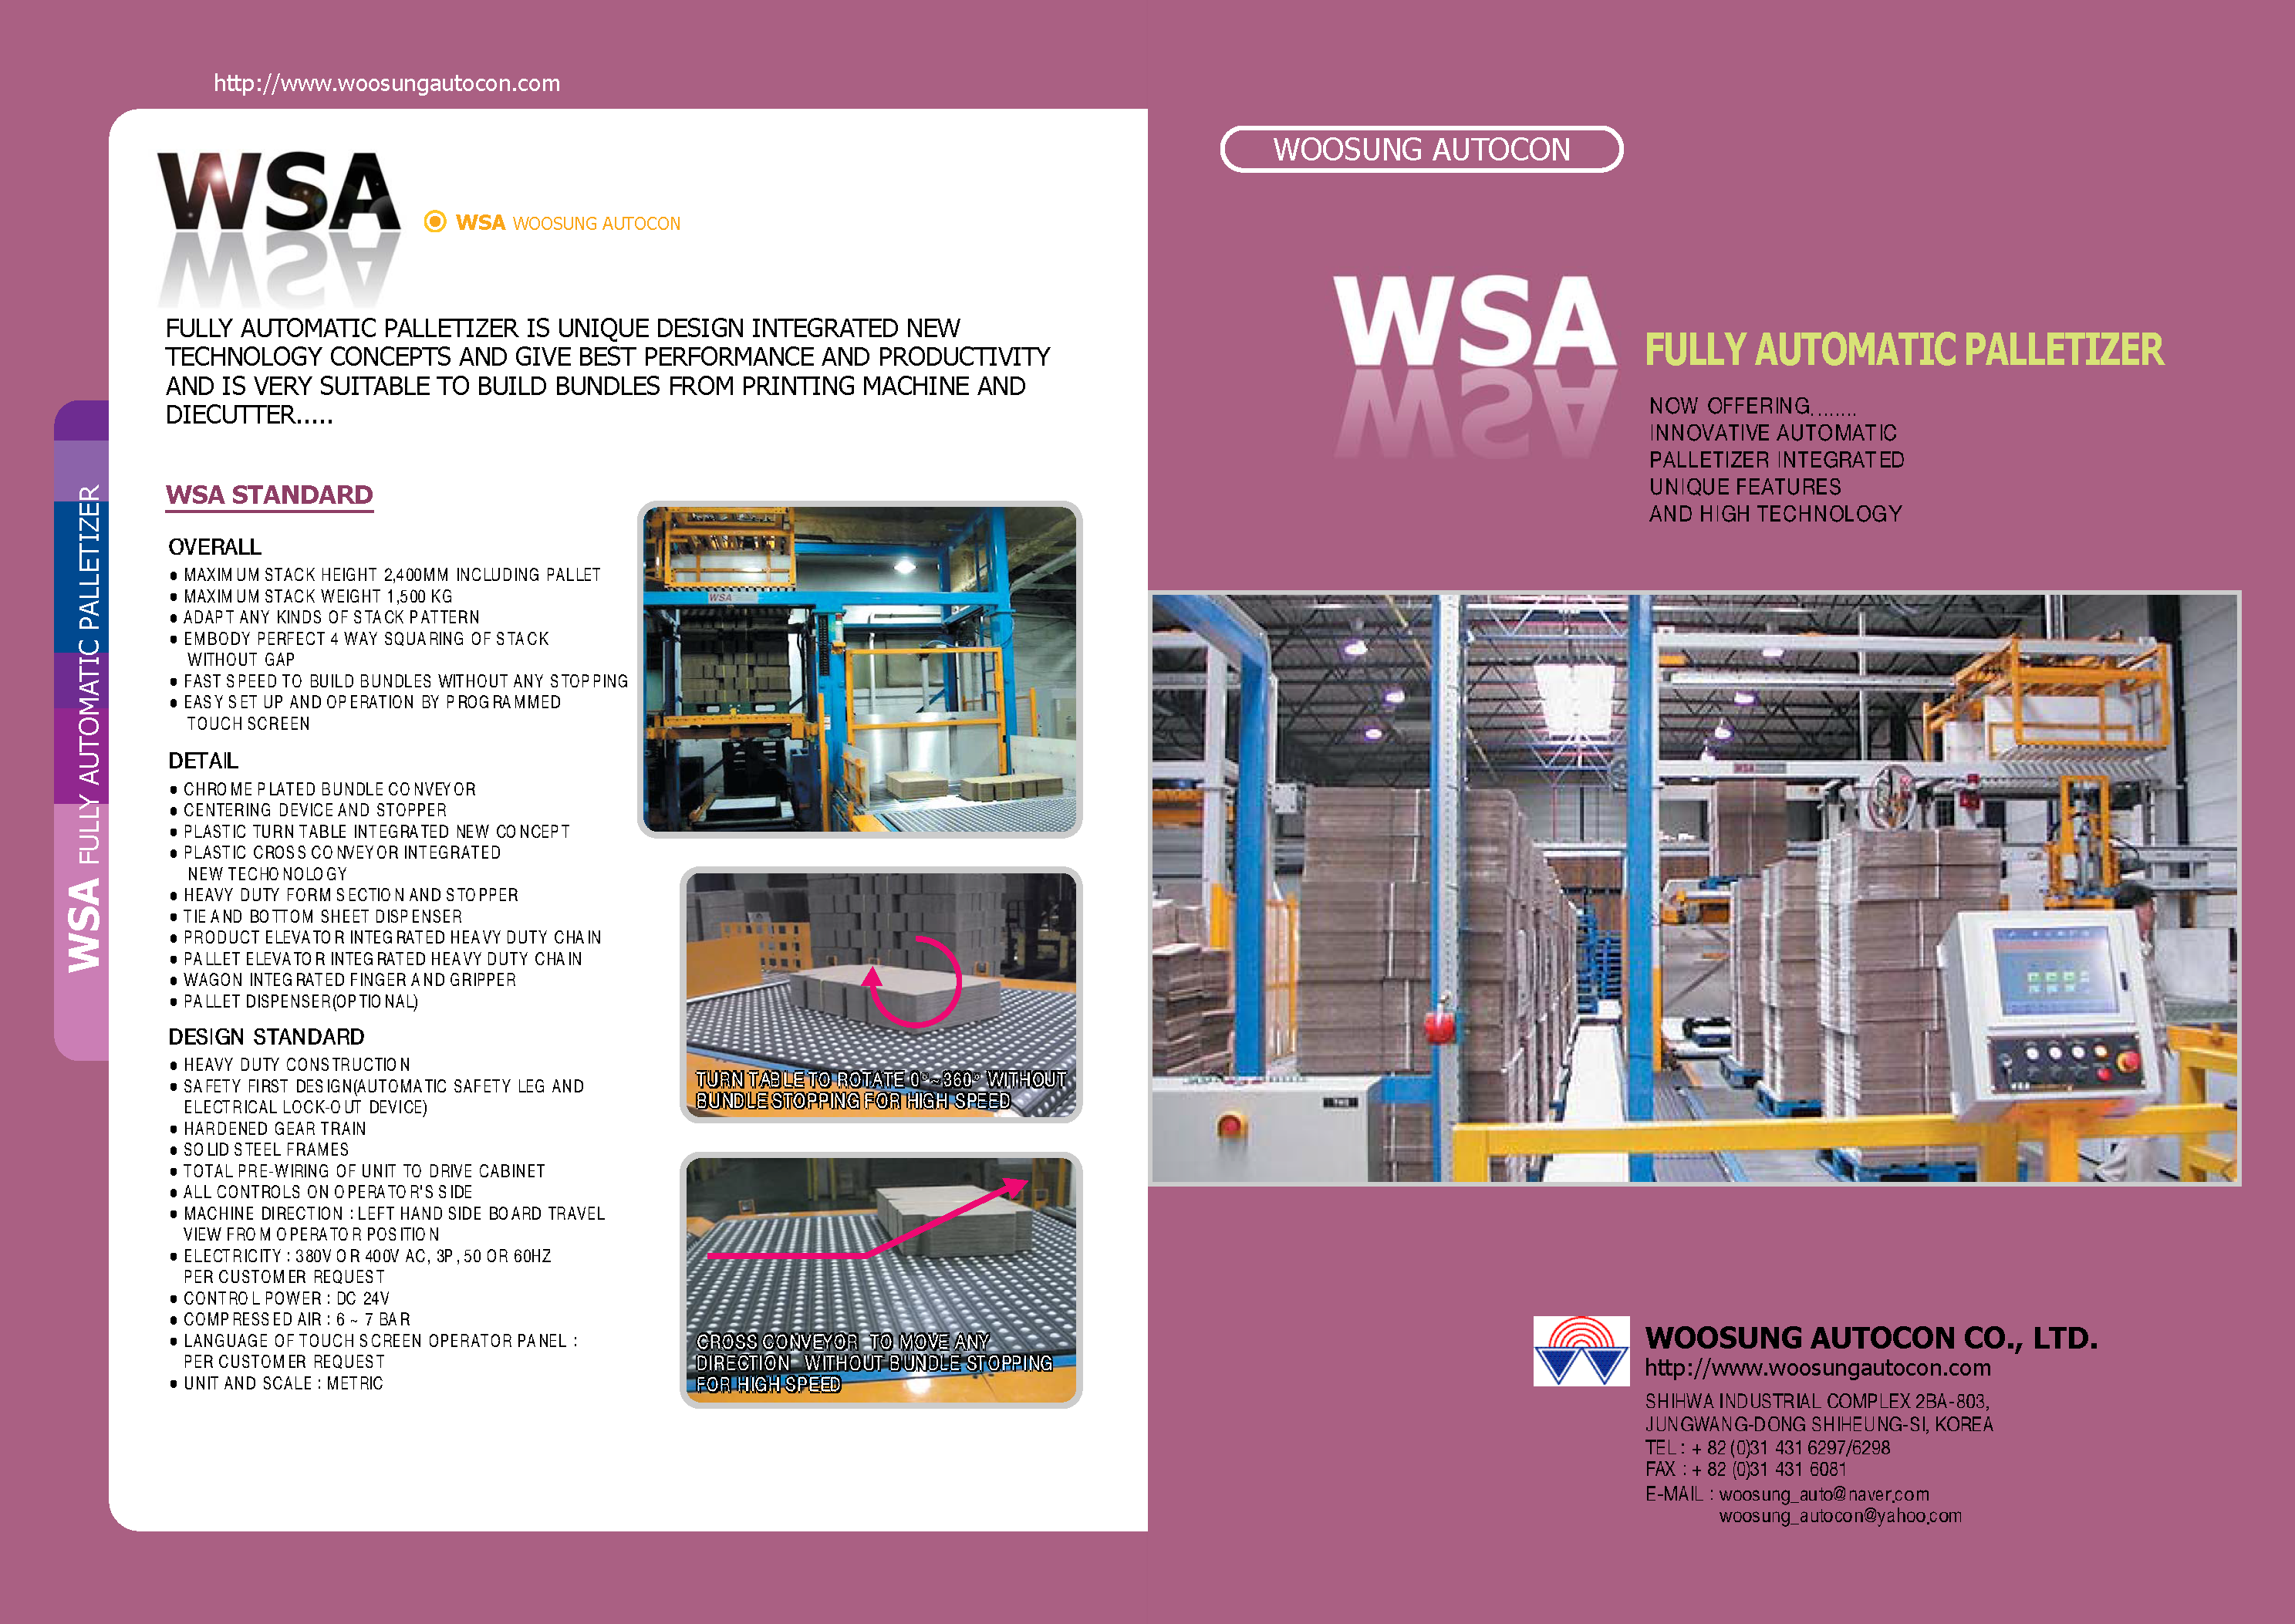 Obtendrá información ampliada sobre los Formadores de Paquetes y Paletizadores de WSA  en el folleto